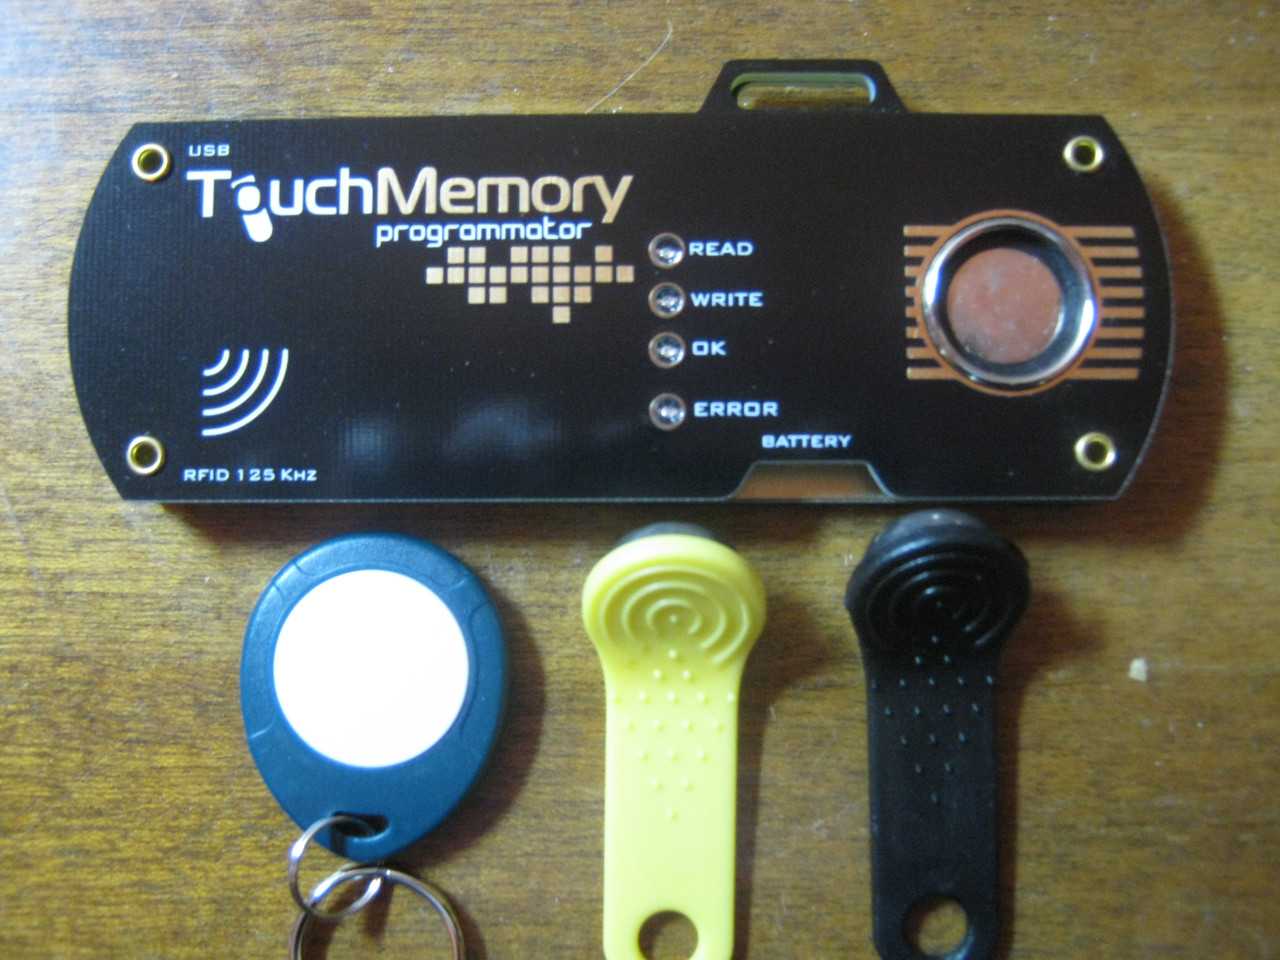 Программатор для домофона. Программатор для ключей Touch Memory RW-1990. Дубликатор ключей домофона Touch Memory. Дубликатор домофонных ключей. "Dallas" (DS-1990a). Программатор для прошивки ключей для домофона.